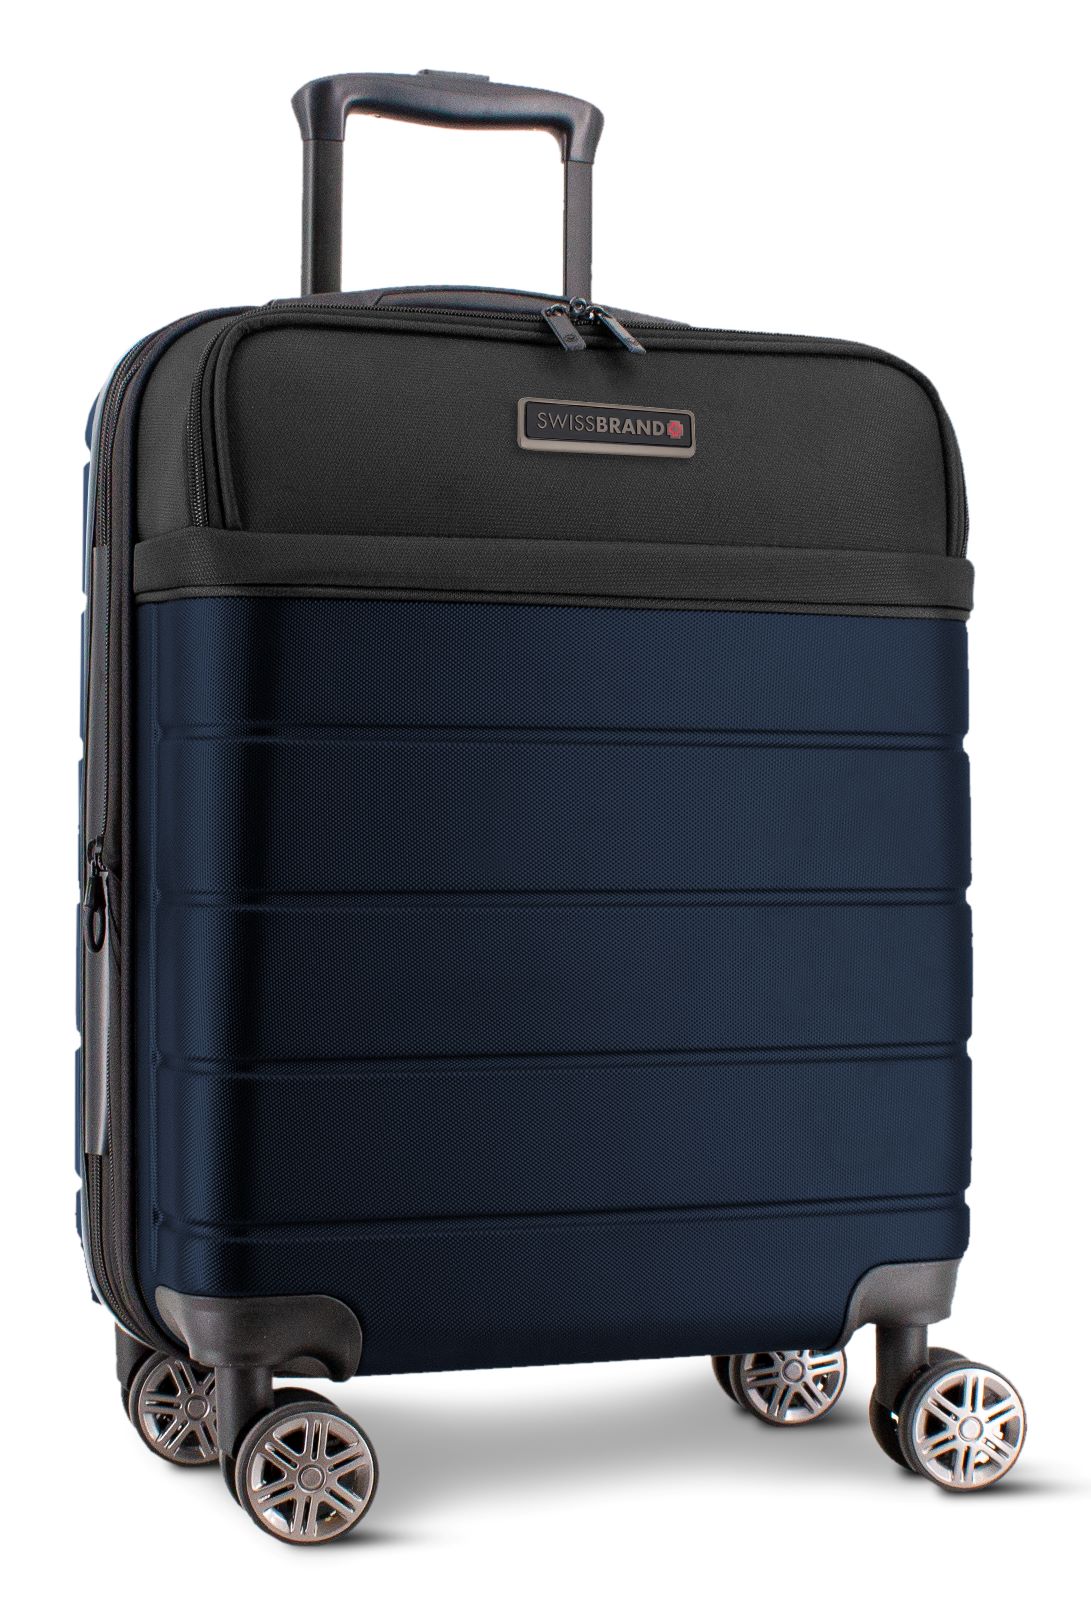 ✮מותג שוויצרי מקורי✮ מזוודה גדולה 28" יוקרתית בסגנון עסקי חצי קשיחה בשילוב בד  SwissBrand דגם AMSTERDAM